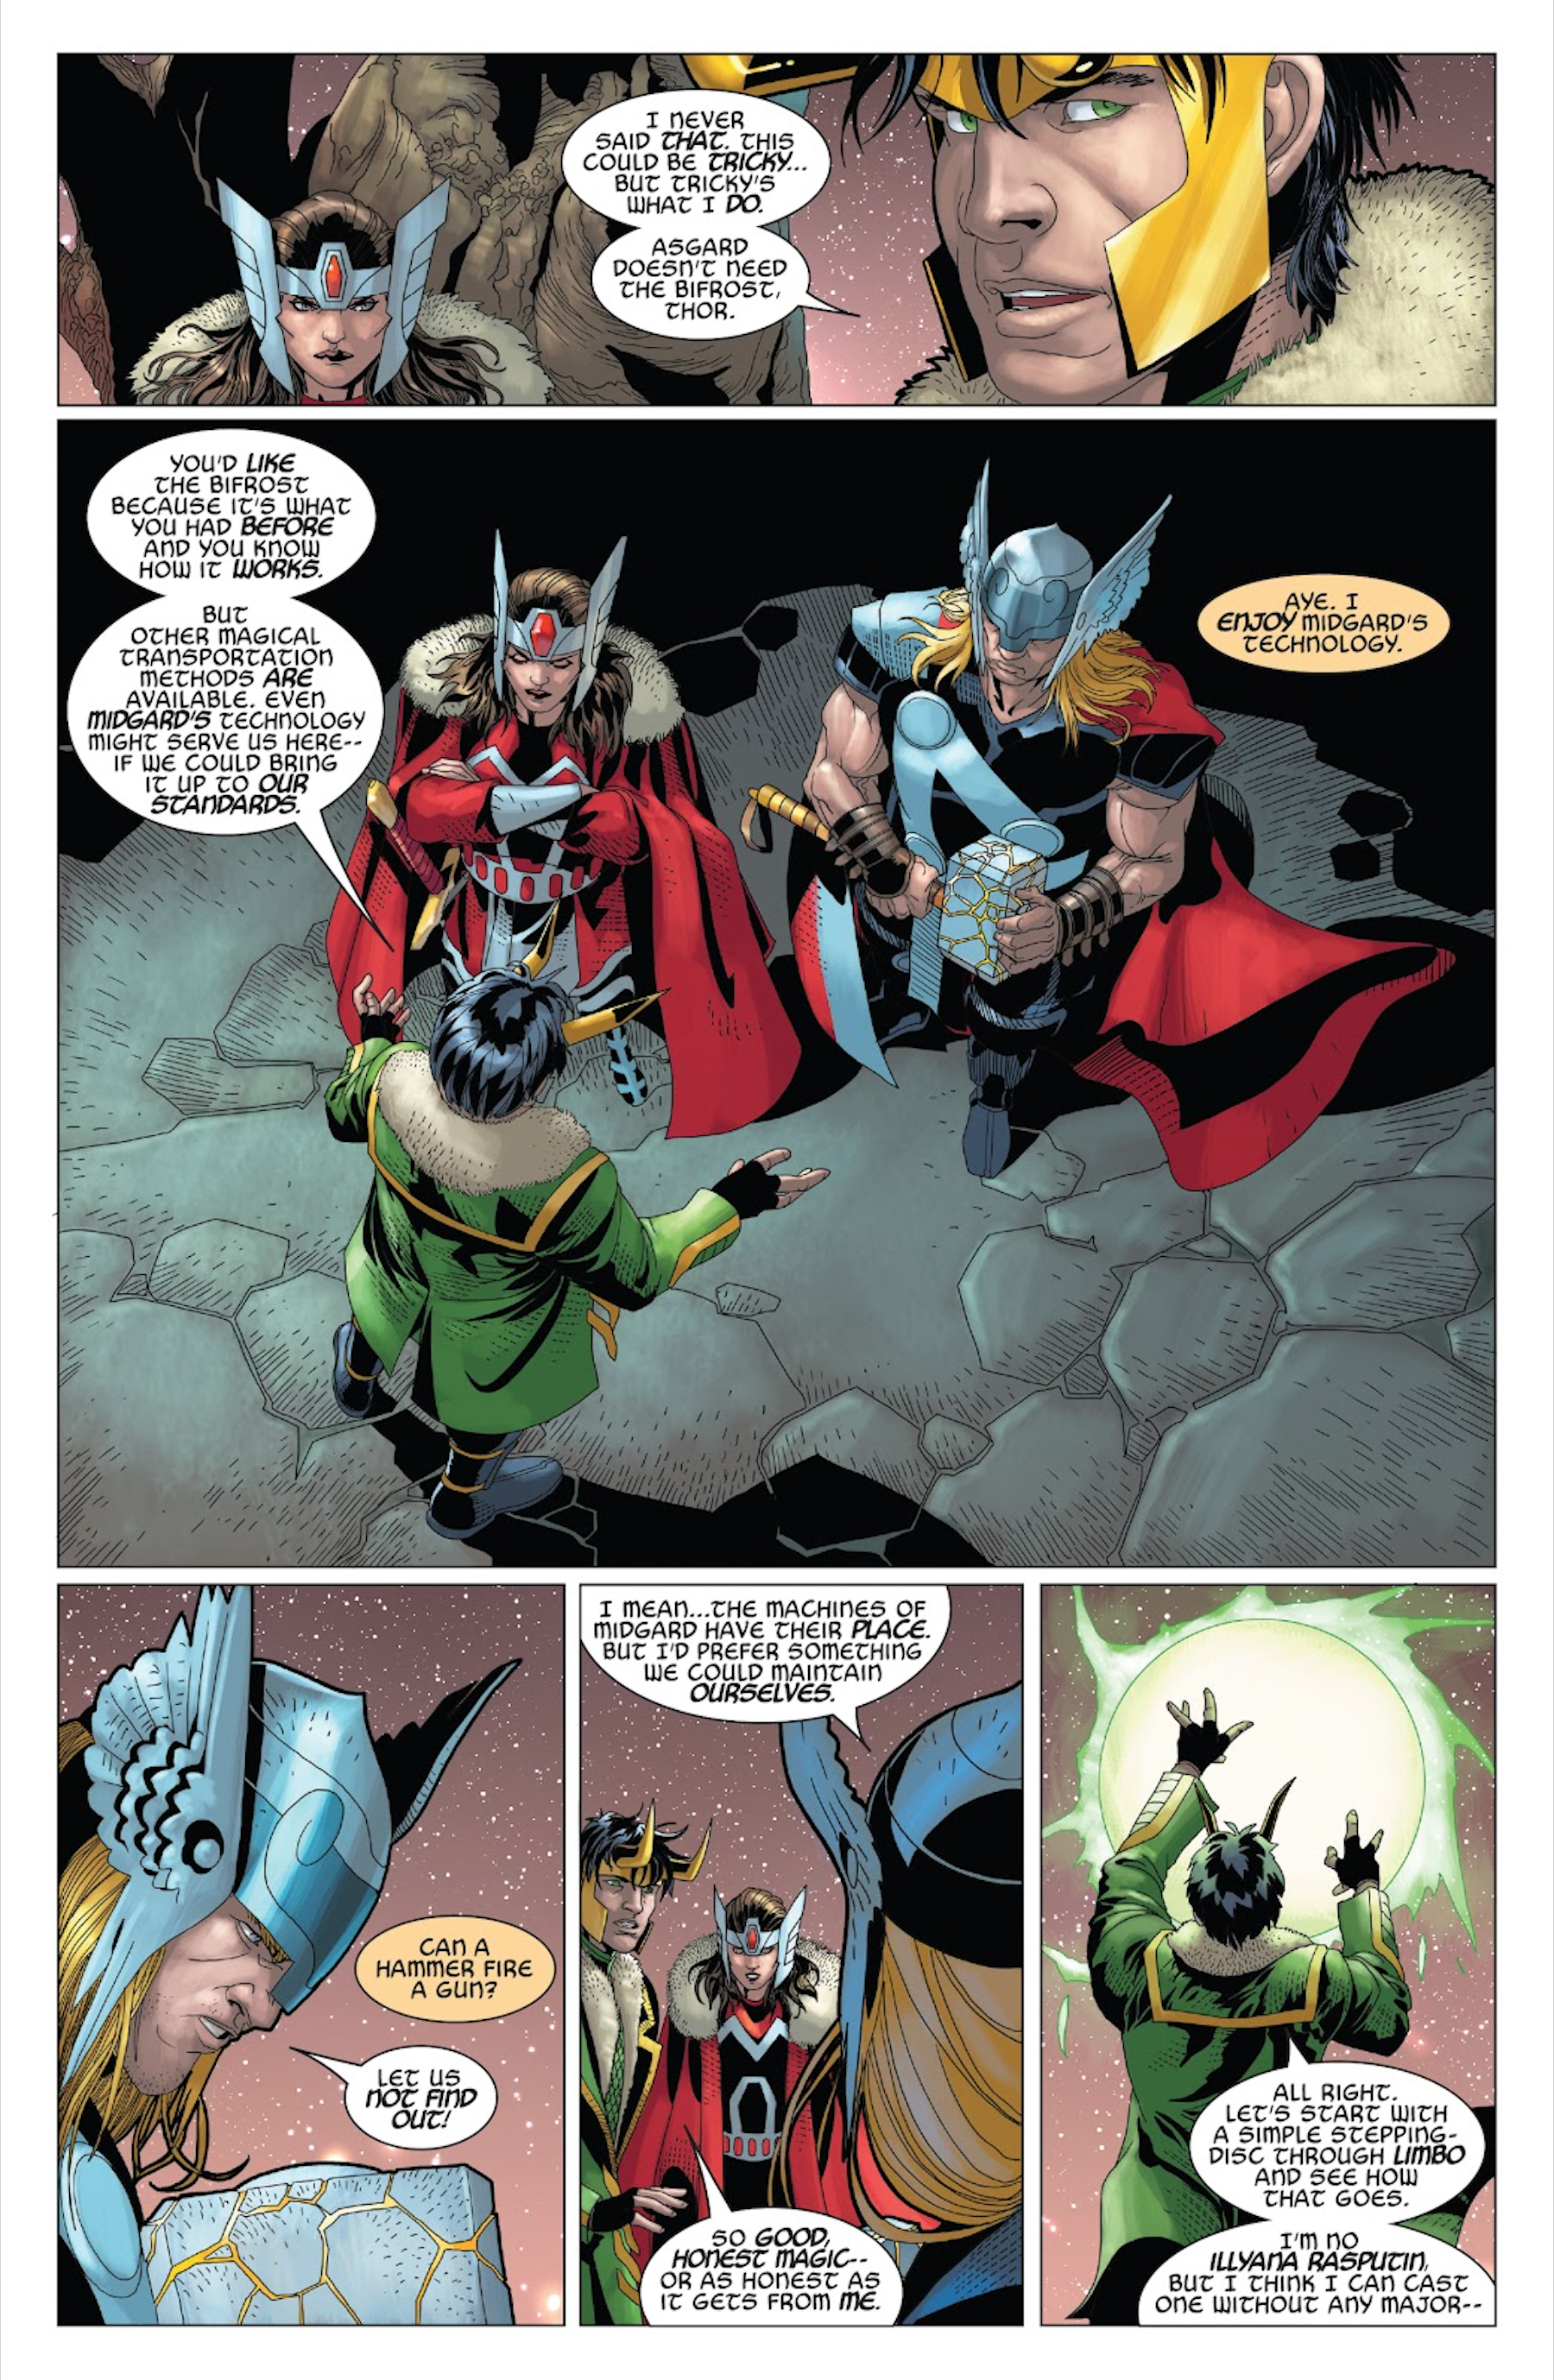 Thor e Loki falam sobre a Ponte Bifrost